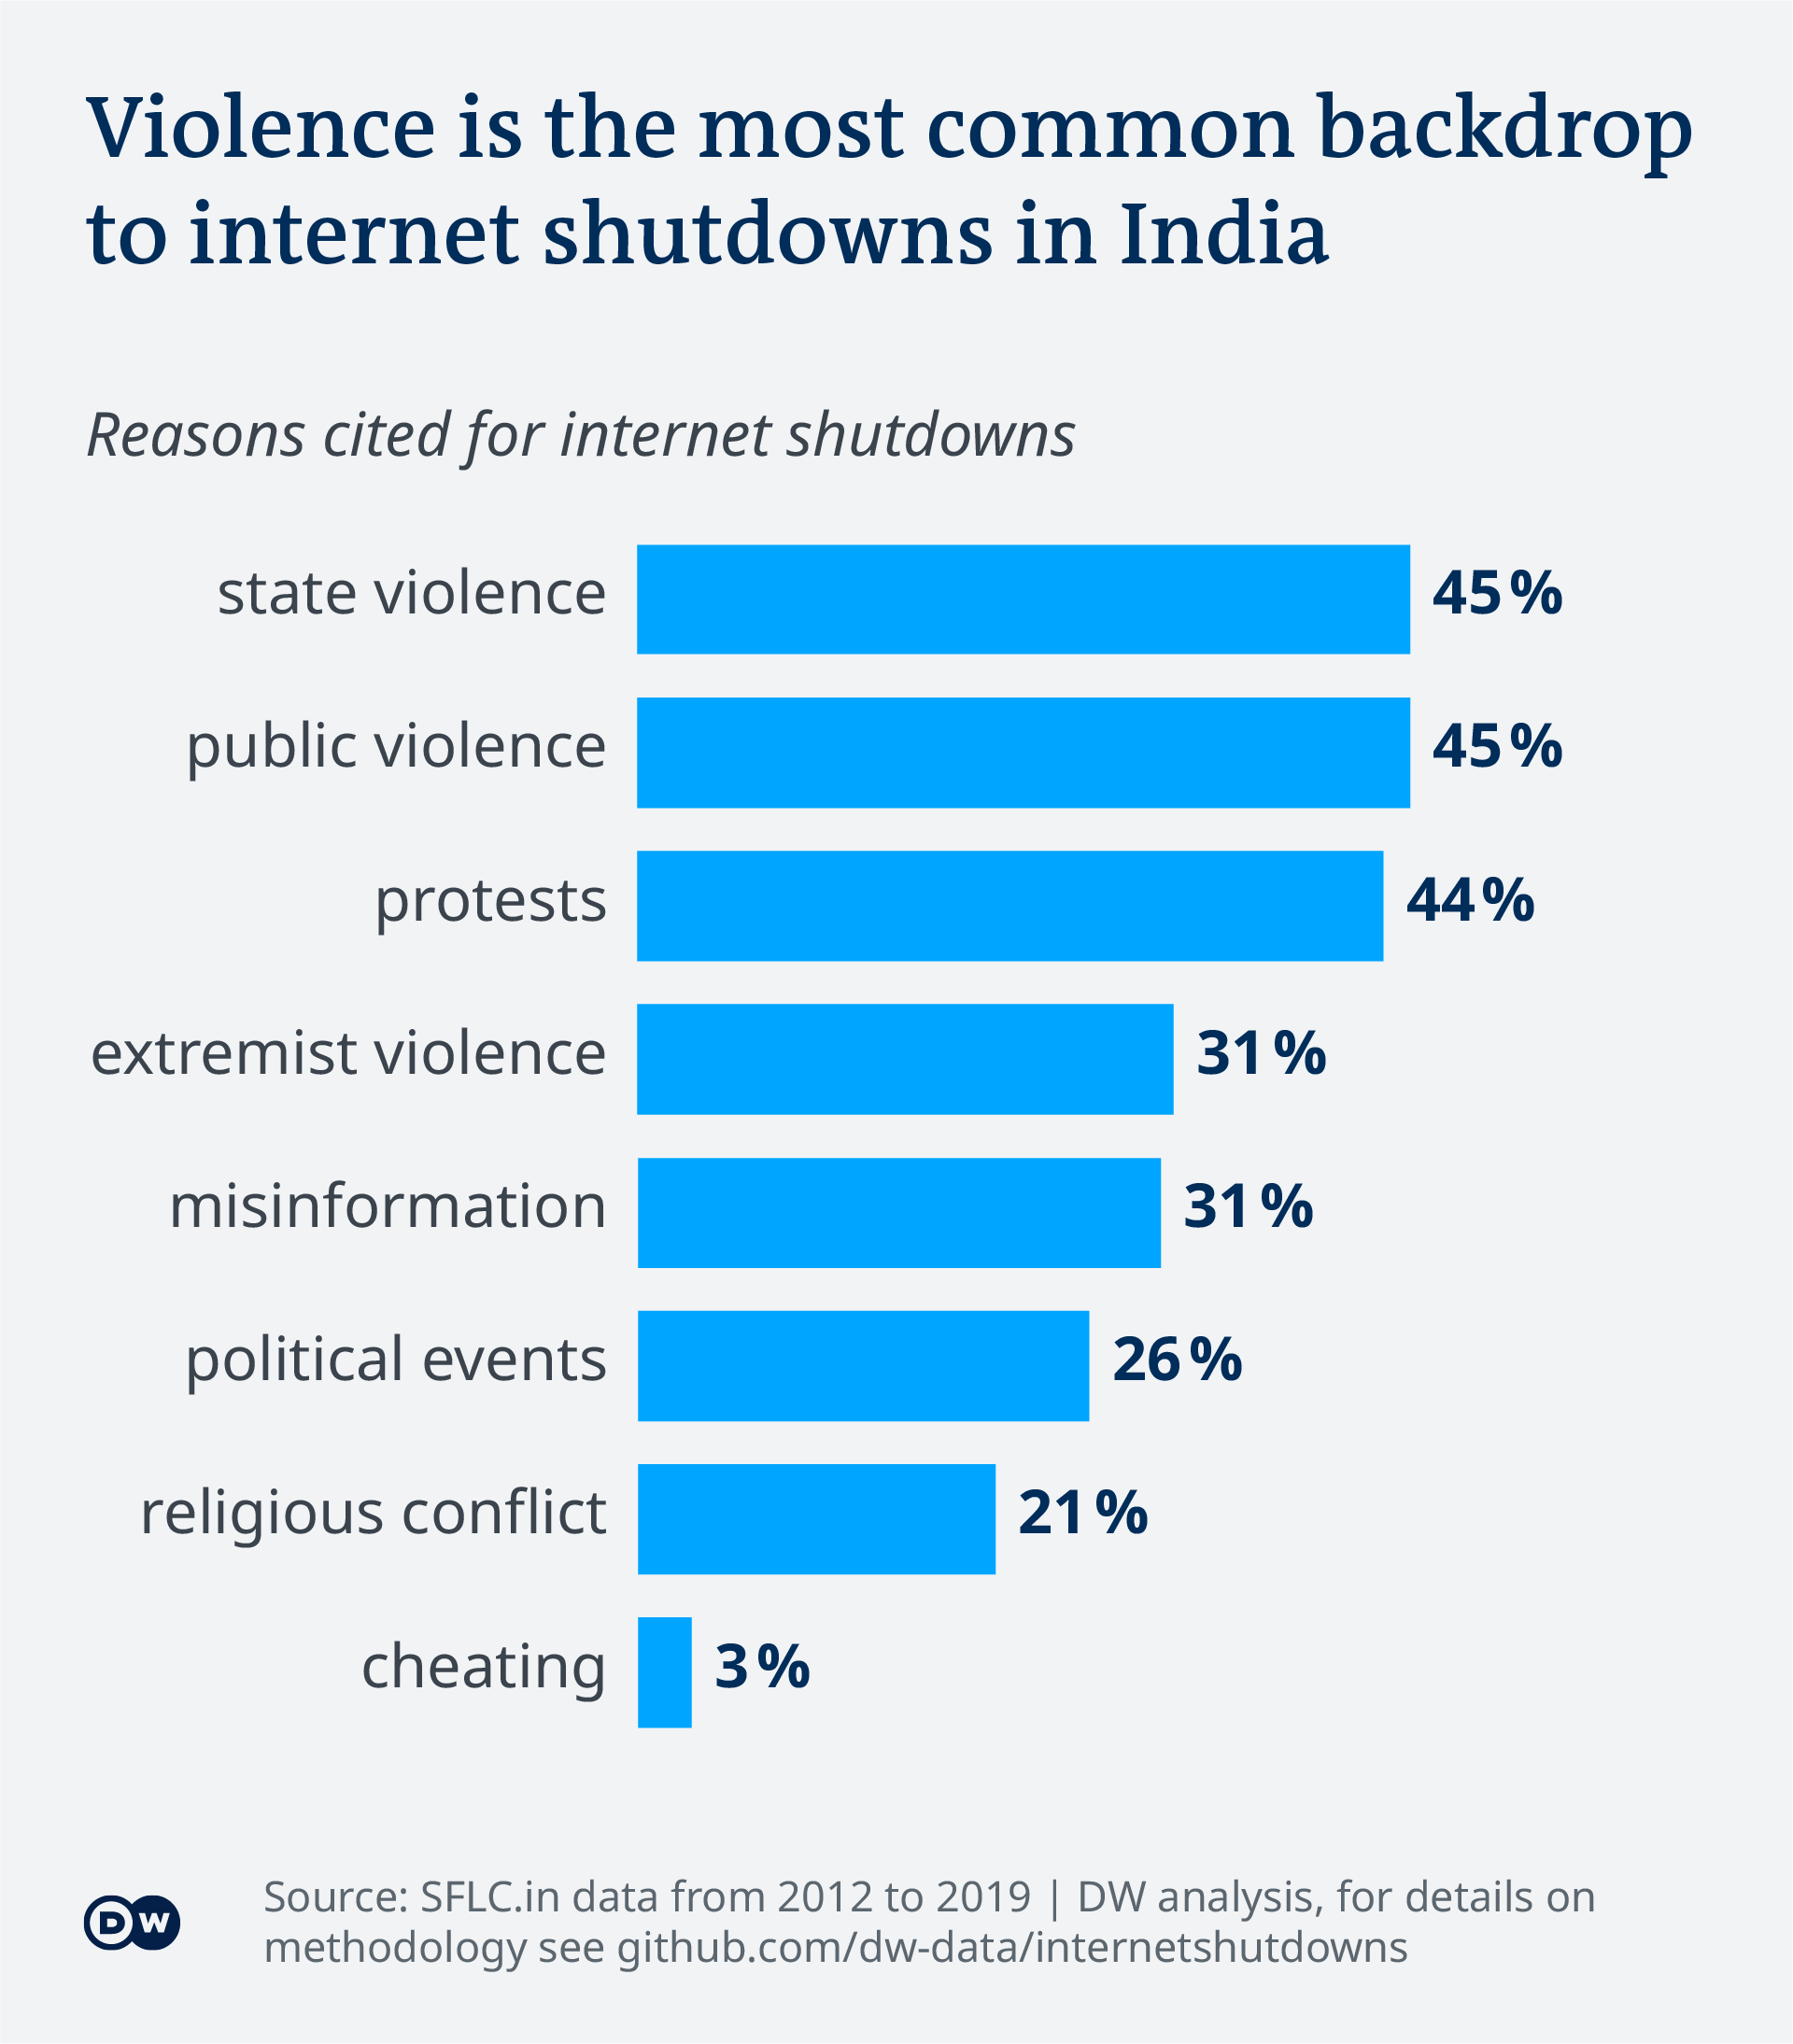 Data visualization - Internet Shutdowns India - reasons for shutdowns